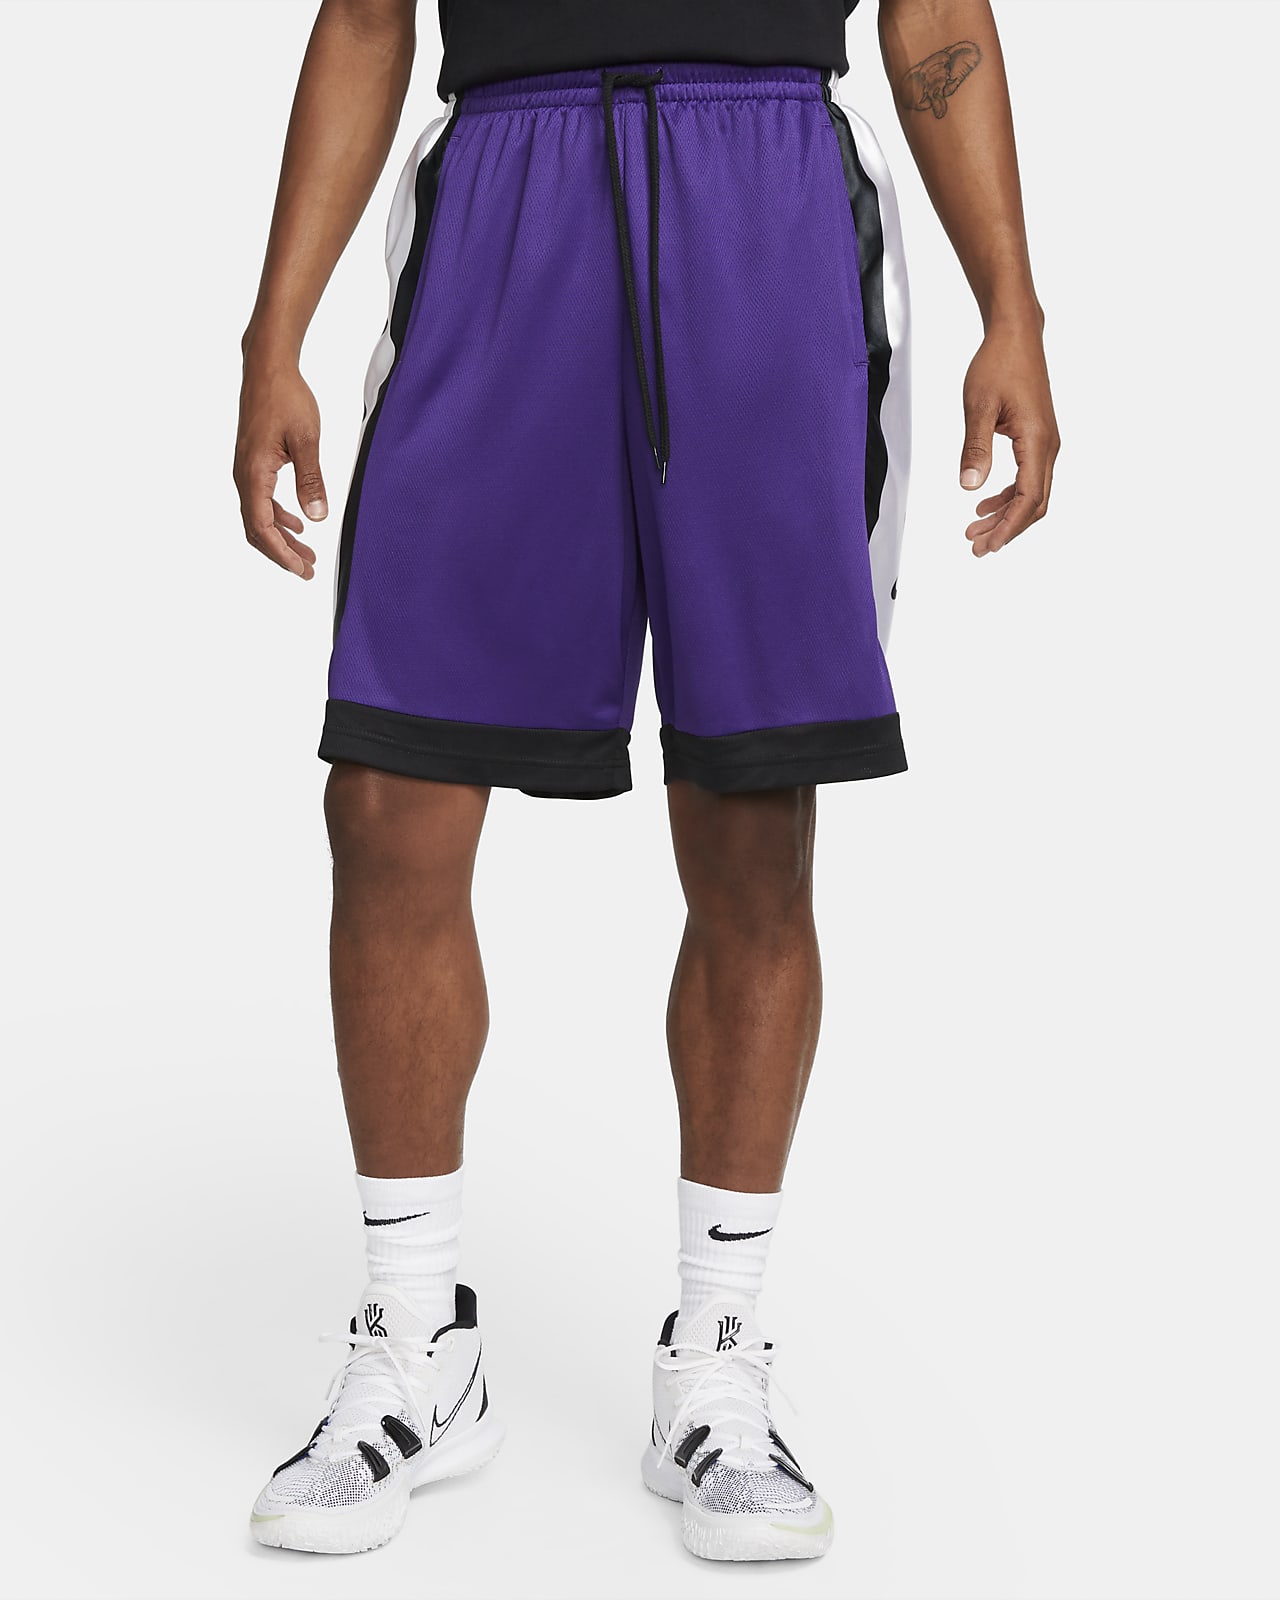 Nike Dri-FIT Men's Basketball Nike.com